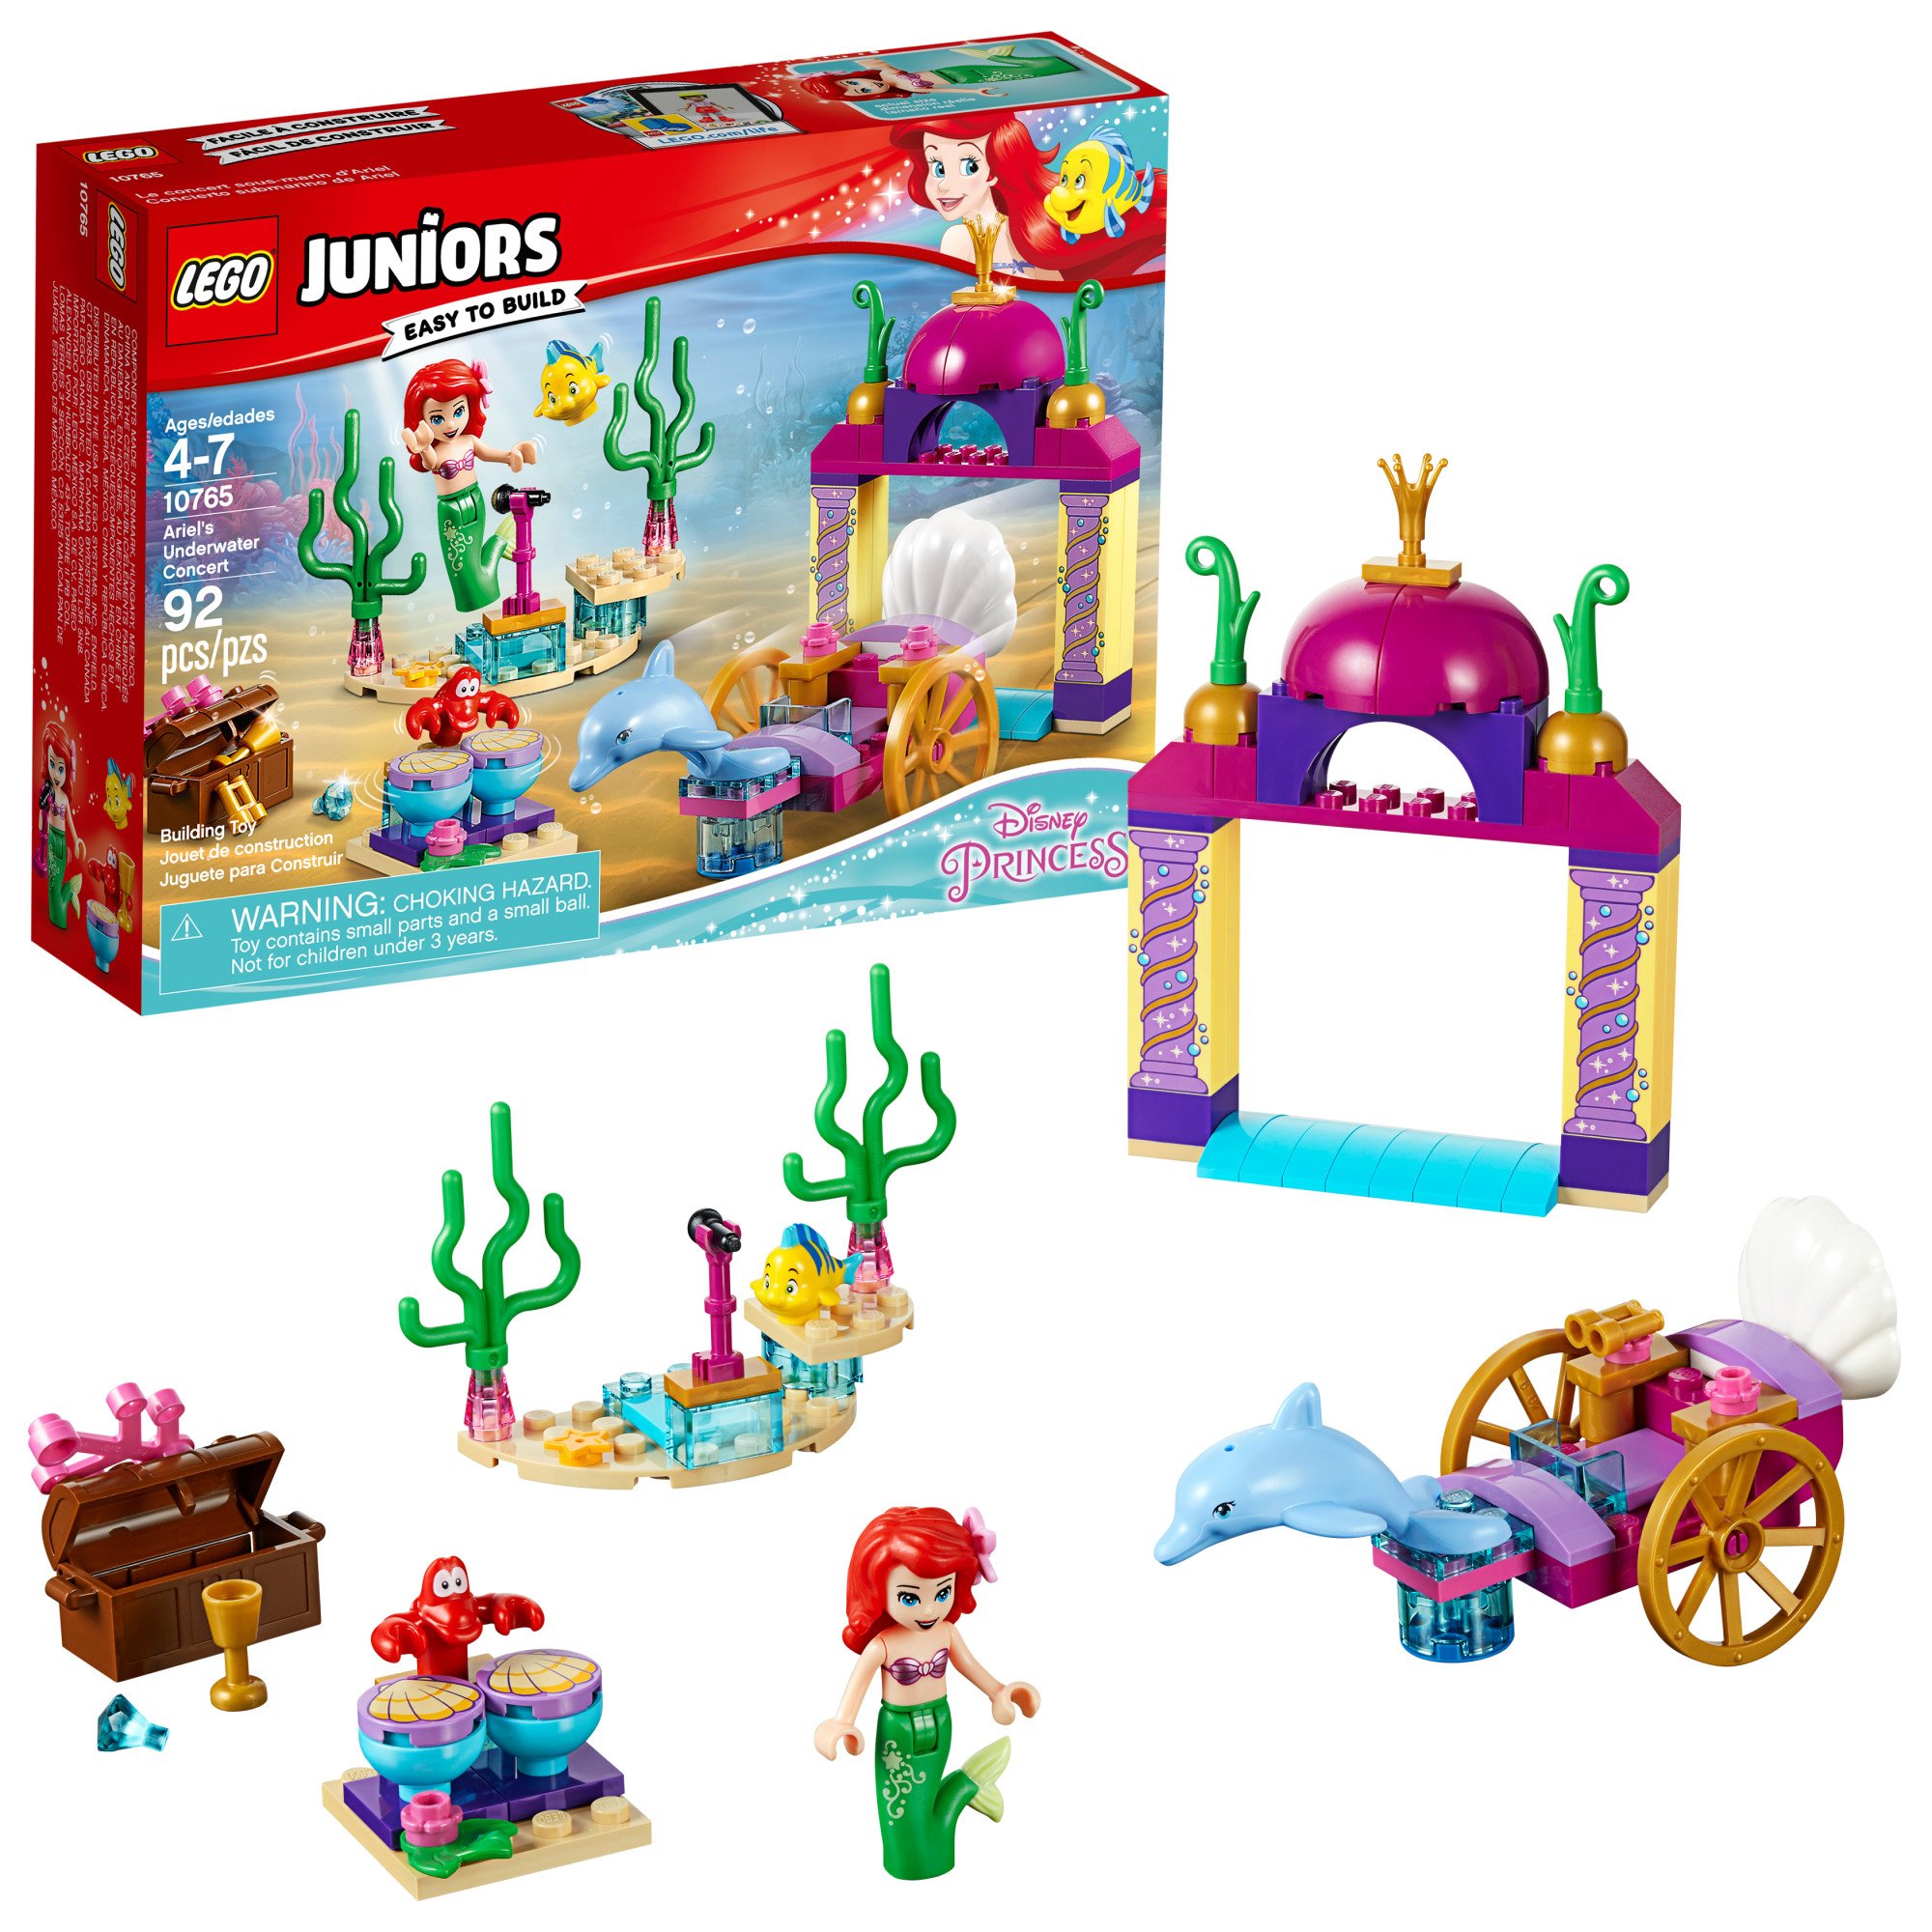 LEGO Juniors Ariel’s Underwater Concert 10765 Building Kit (92 Piece)